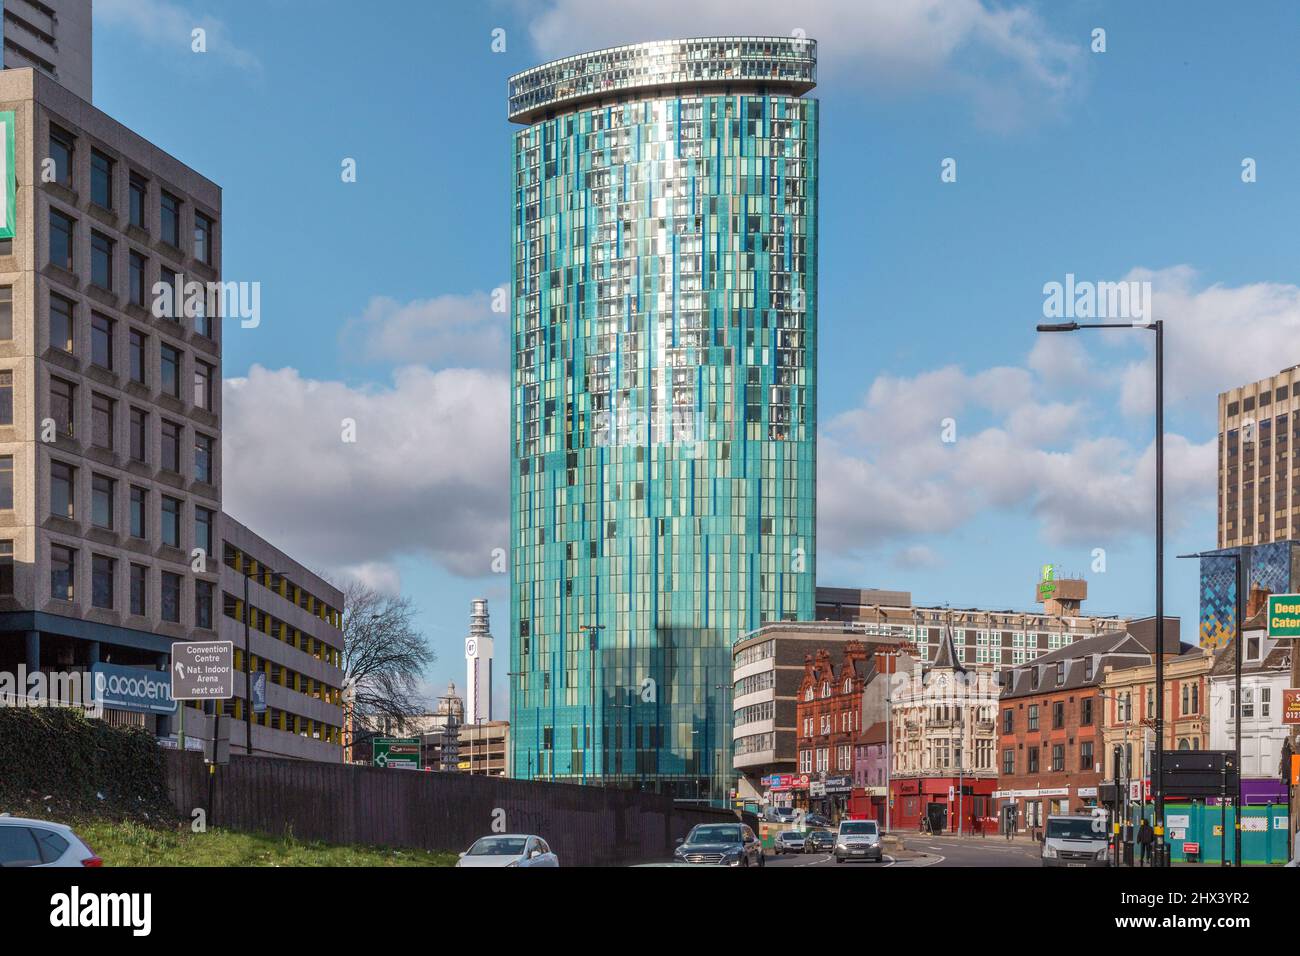 Le Skyscraper mixte 10 Holloway Circus dans le centre de Birmingham. Il est de couleur aqua distinctive et de style moderne juxtaposé par des bâtiments plus anciens. Banque D'Images